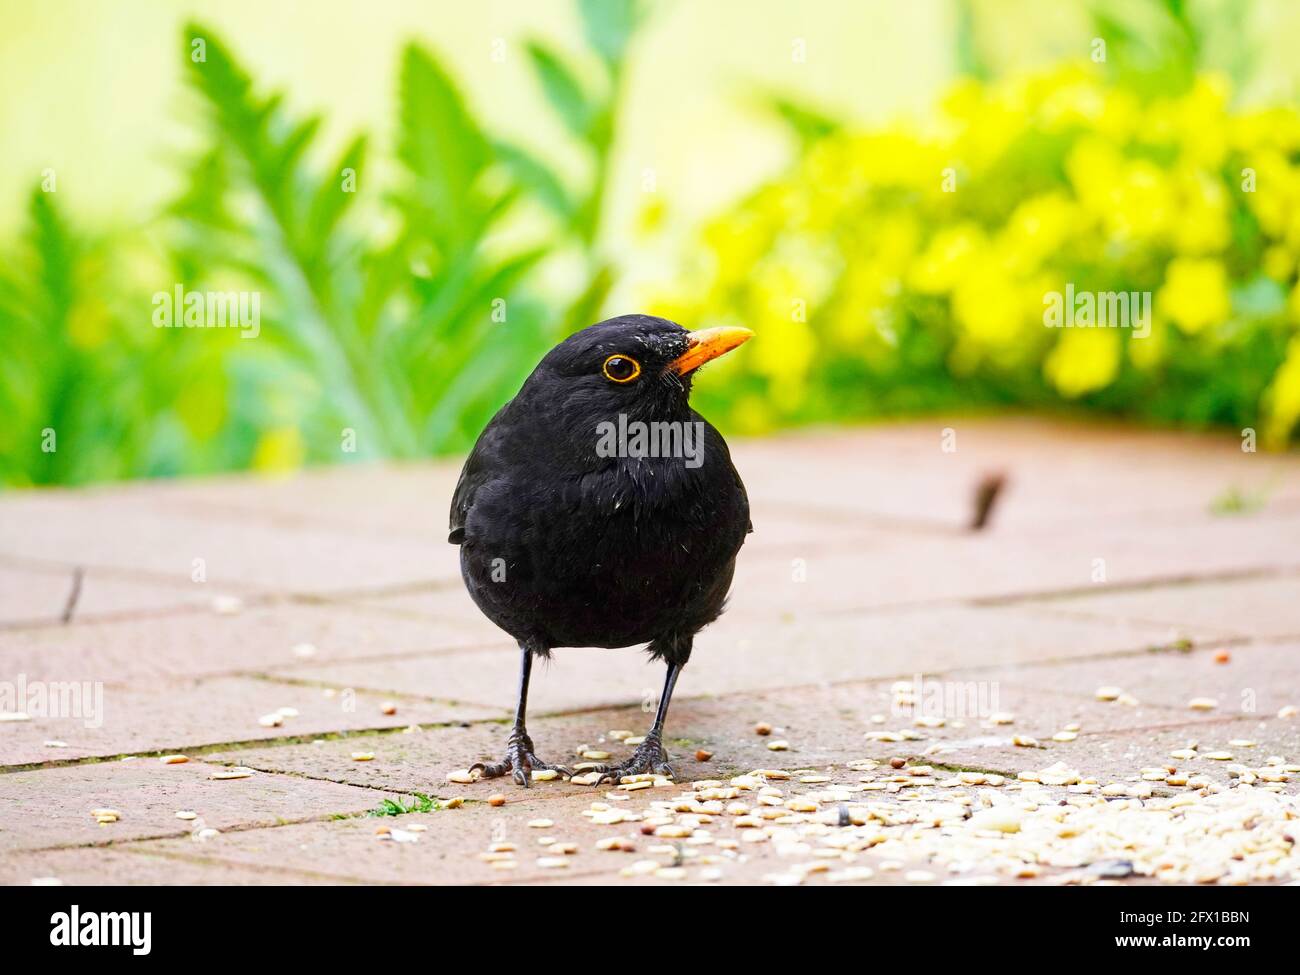 Blackbird auf der Terrasse im Garten in Nahaufnahme. Vogel mit schwarzem Gefieder und orangefarbenem Schnabel. Turdus merula. Stockfoto